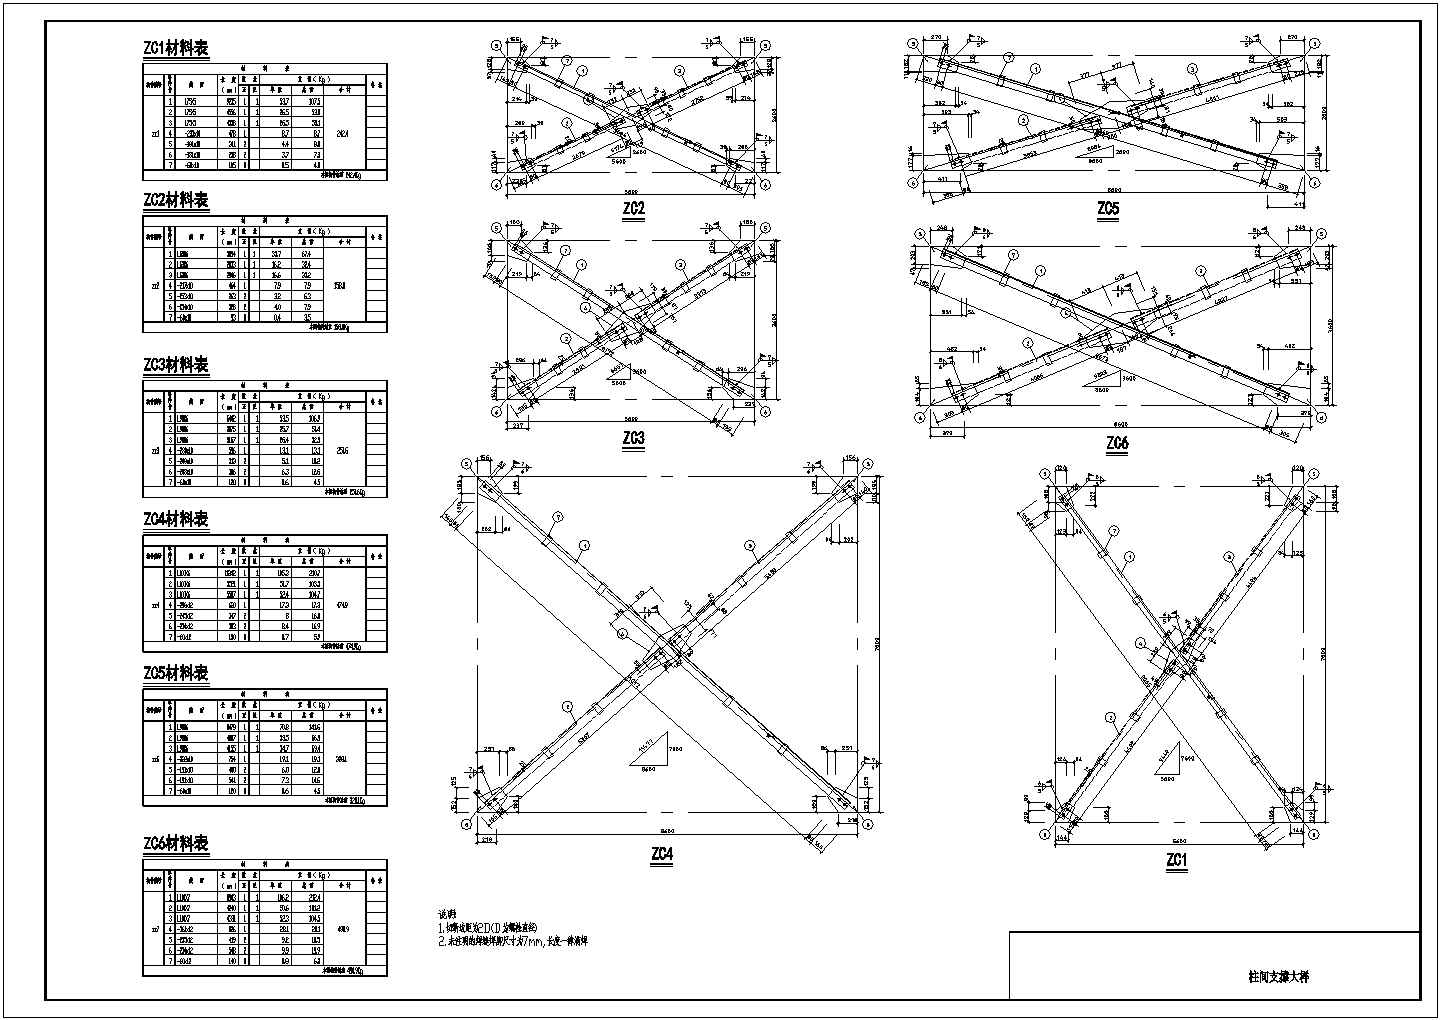 9米跨度柱距厂房框架结构设计图纸